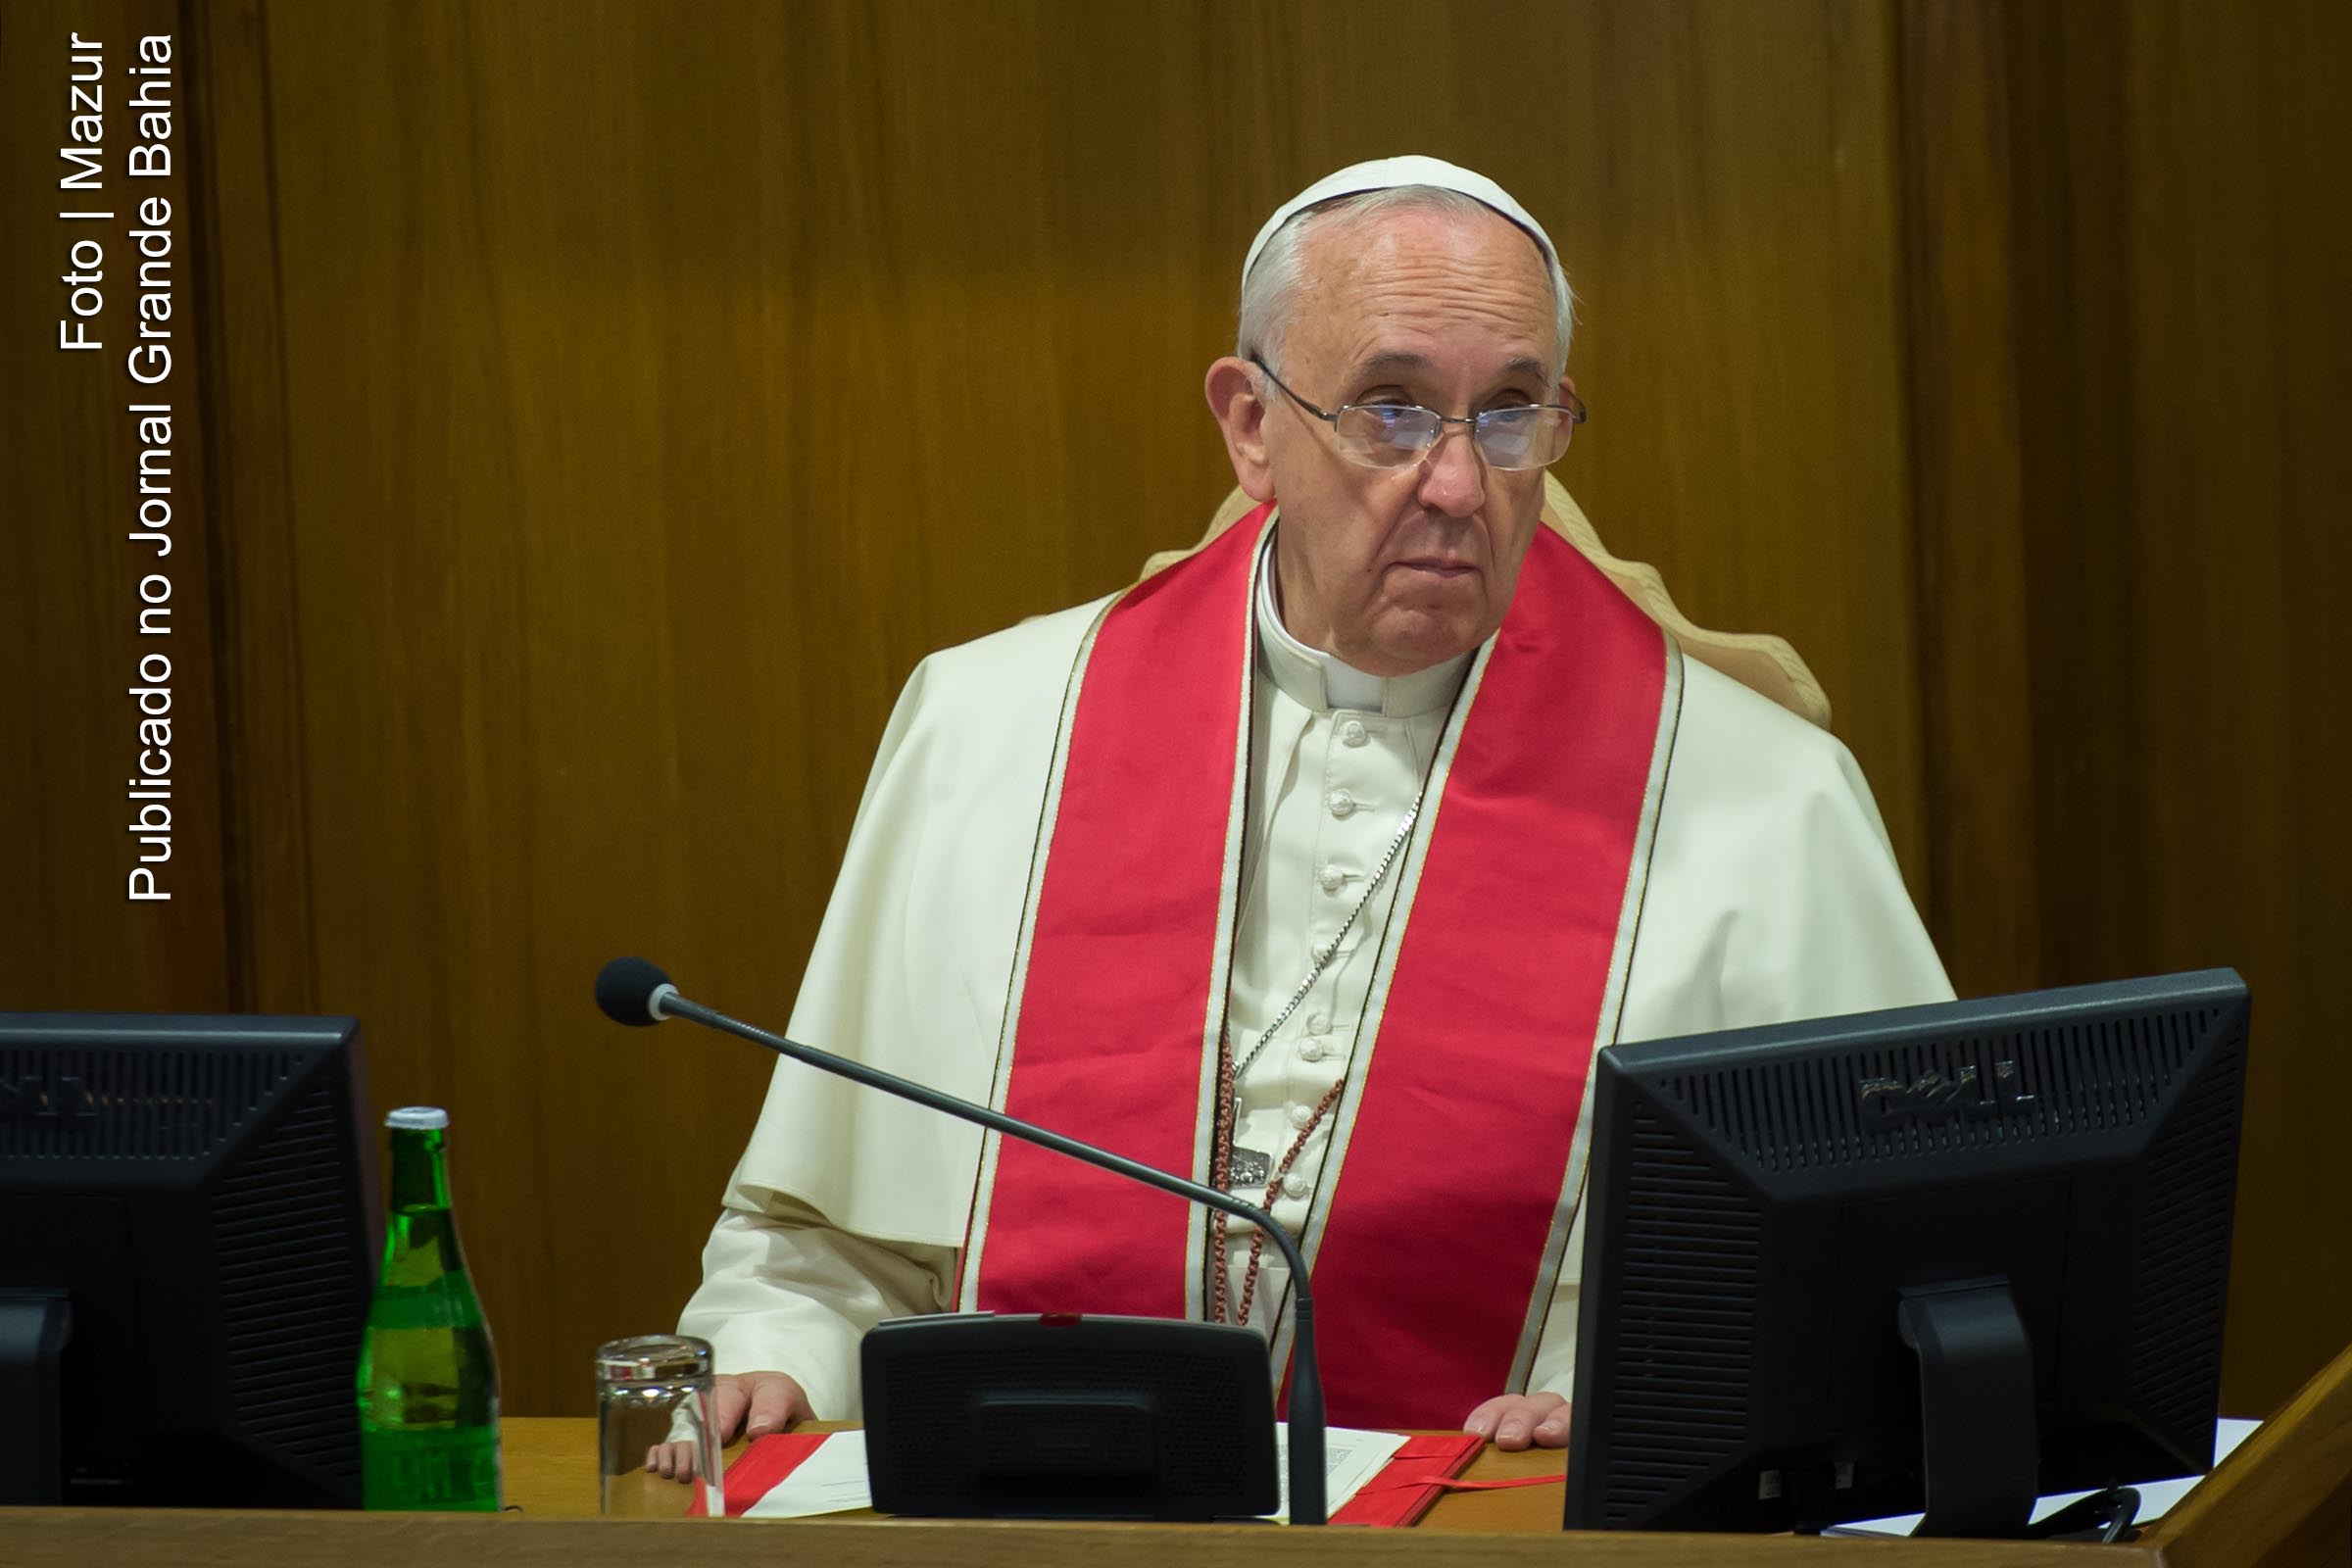 Em nome da Igreja Católica, o Papa Francisco pediu perdão pelos maus tratos contra ciganos.